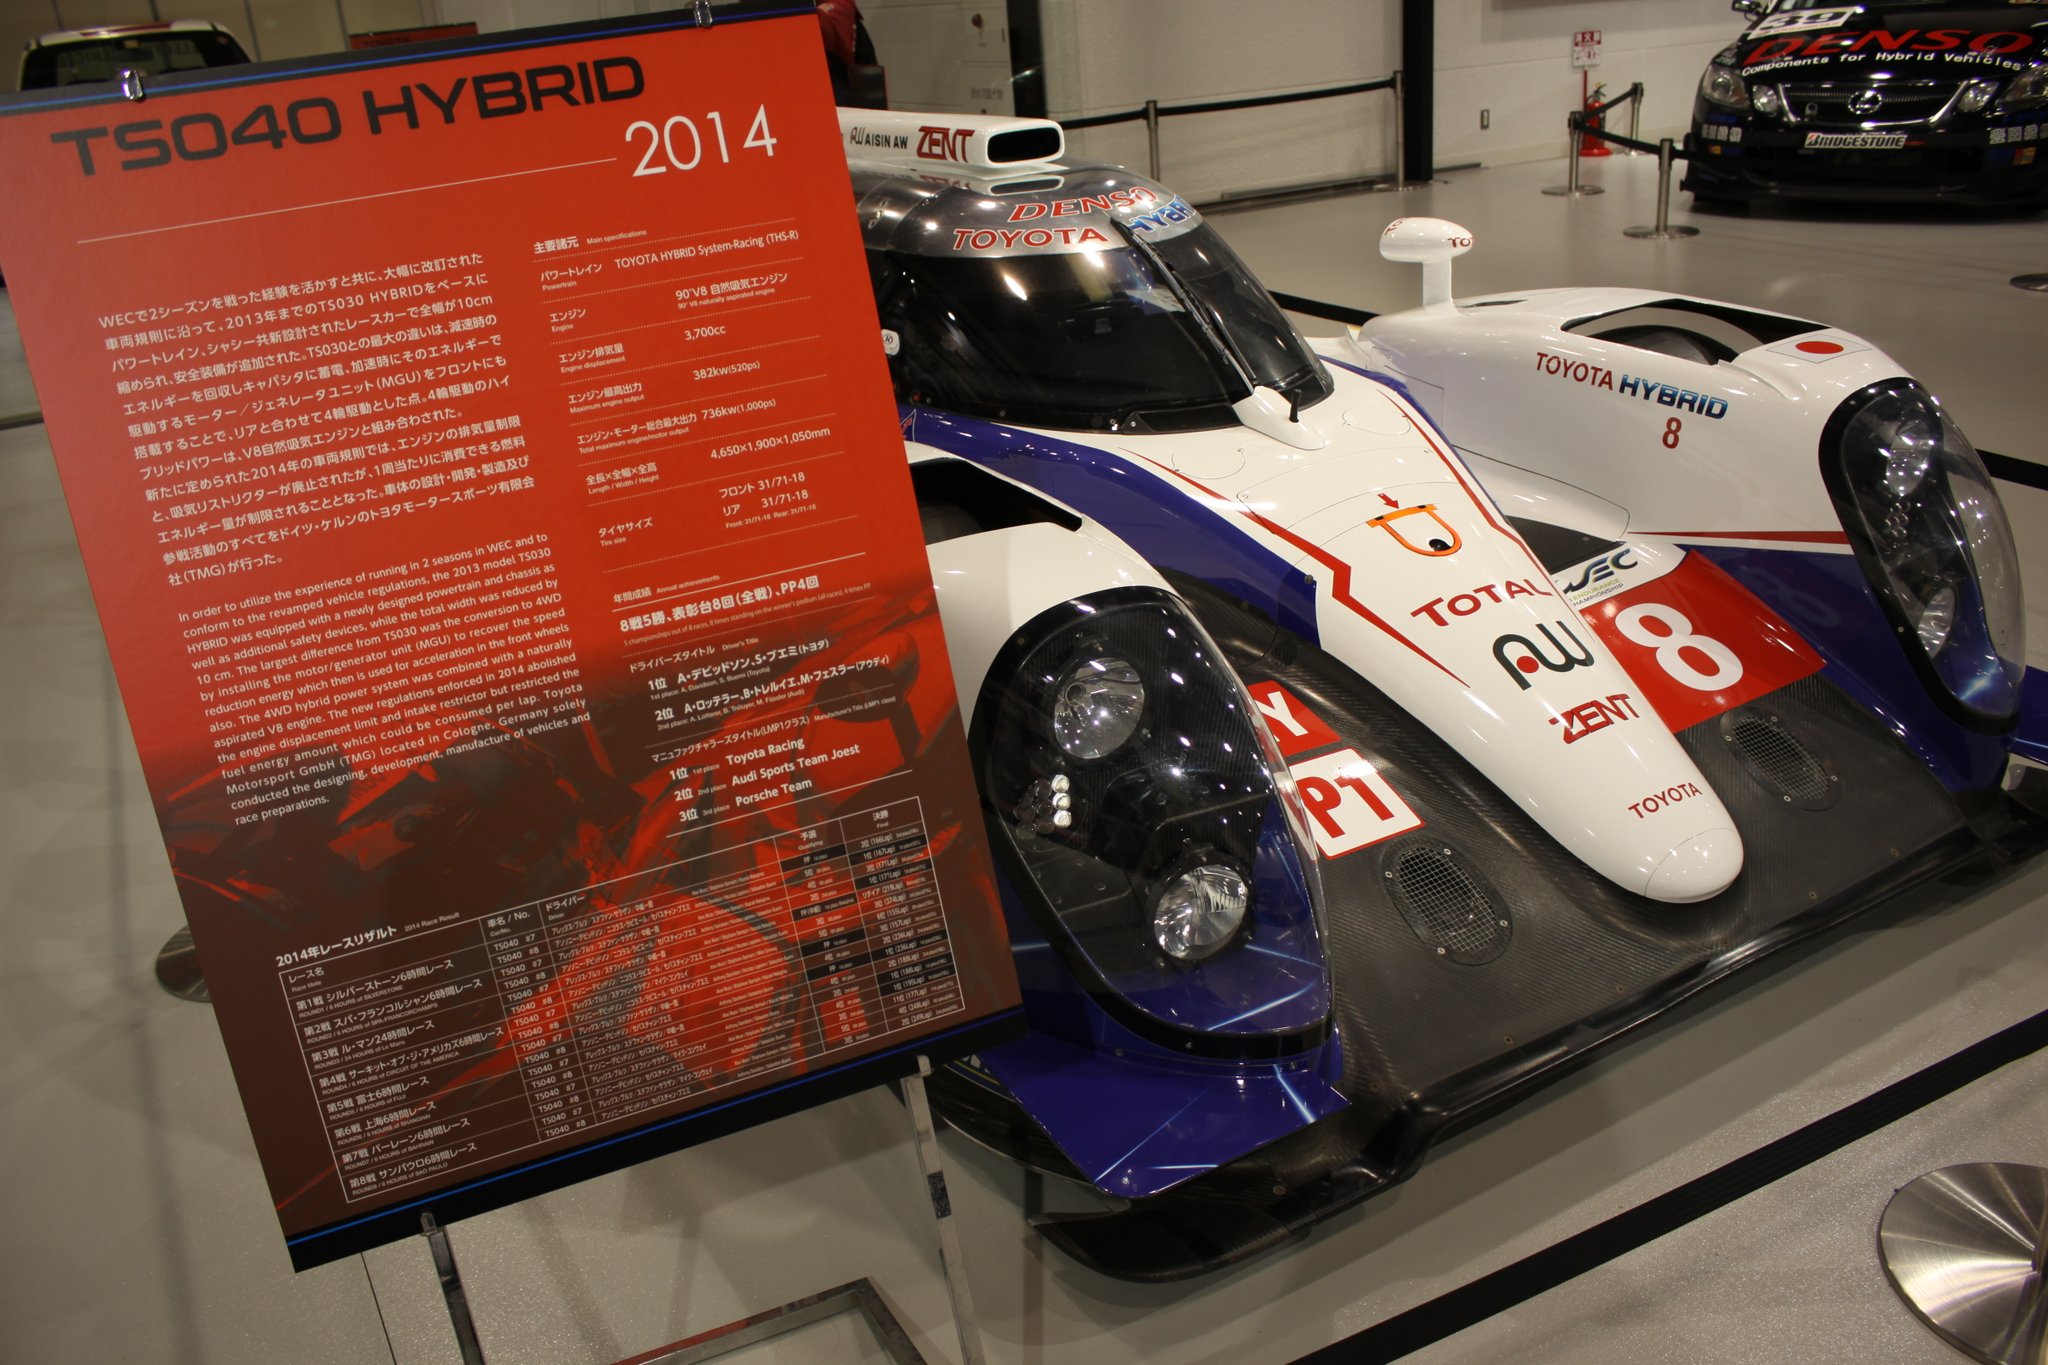 ヨウヘイ ヴィーナスフォート内にある ヒストリーガレージで来年１月まで開催中の ハイブリッド モータースポーツ展に 展示中の14年型 Ts040 Hybridを見てきた 14年 Wec 世界耐久選手権 で 年間チャンピョンになった８号車